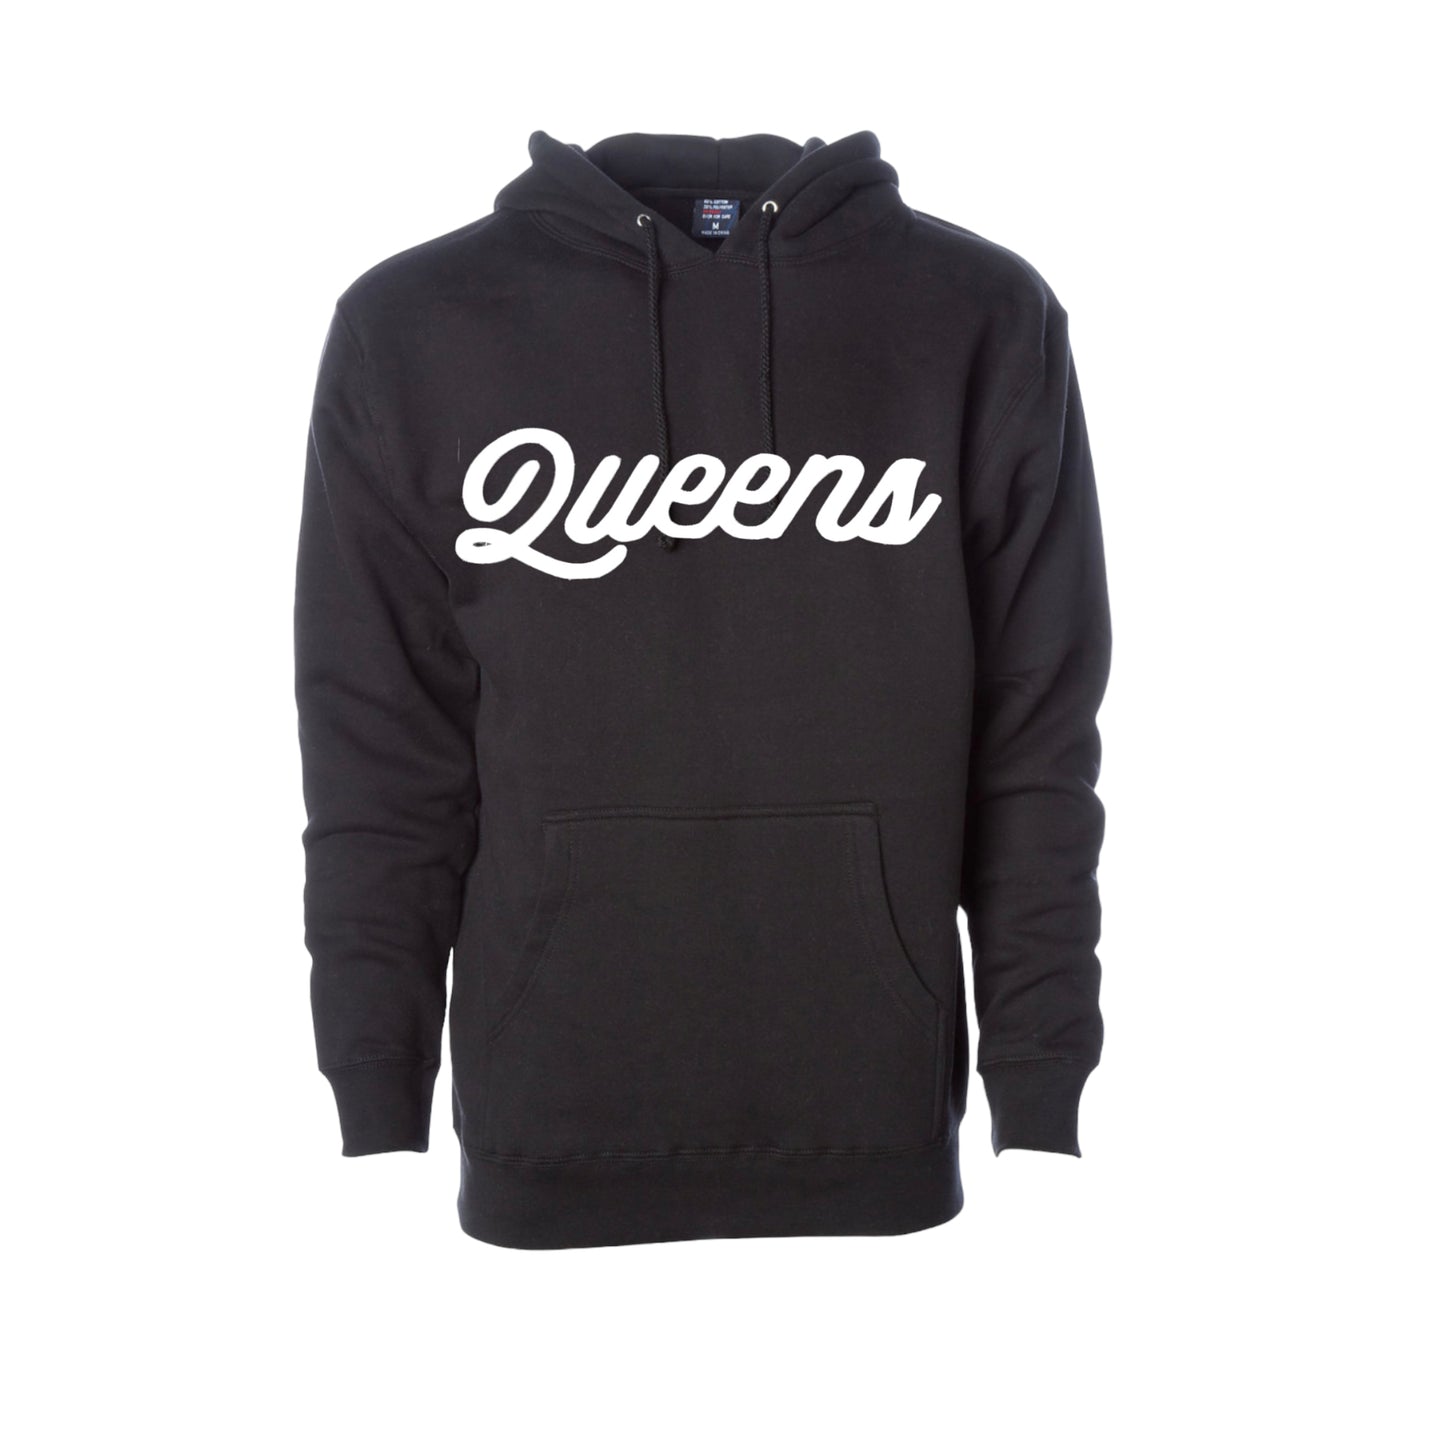 Queens Script Sweater